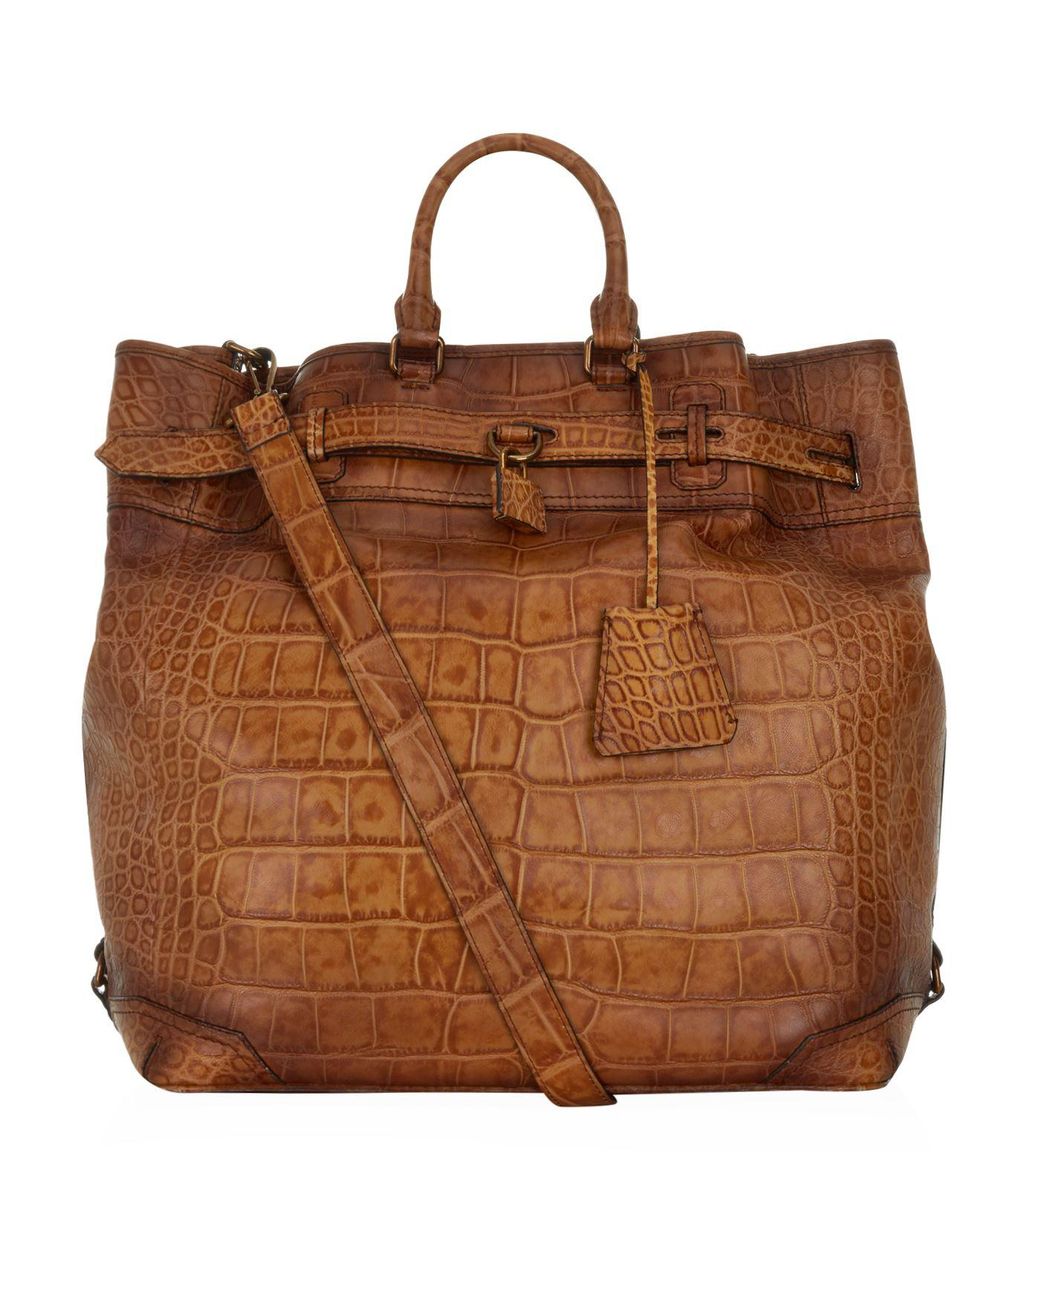 Burberry Travel bag 328815